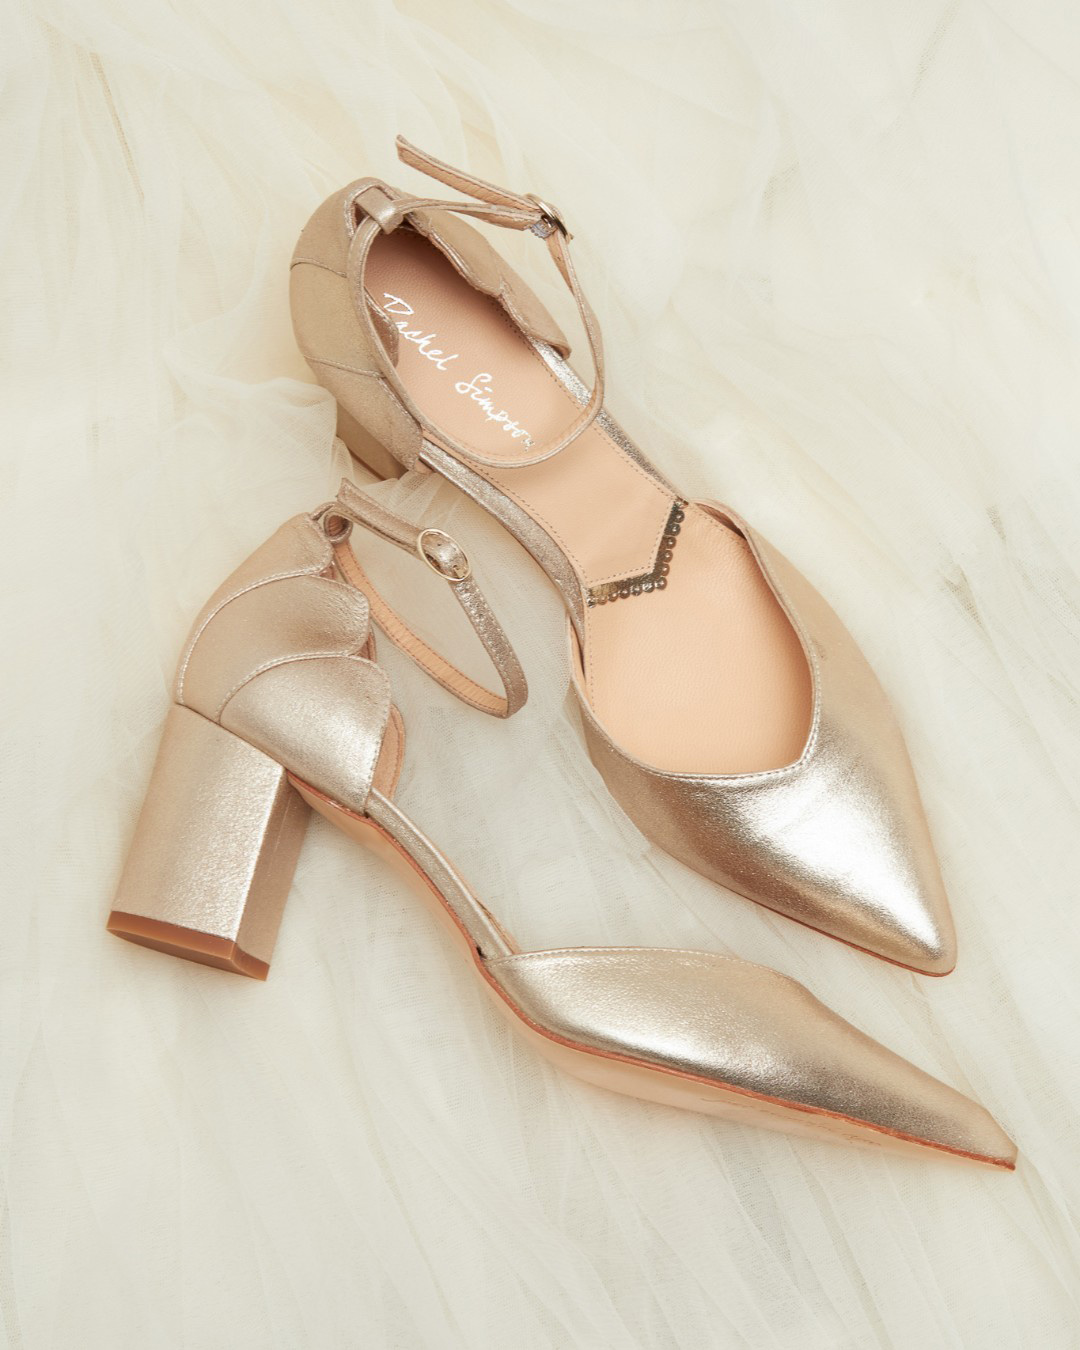 gold wedding shoes low heel simple sparkles rachelsimpsonshoes